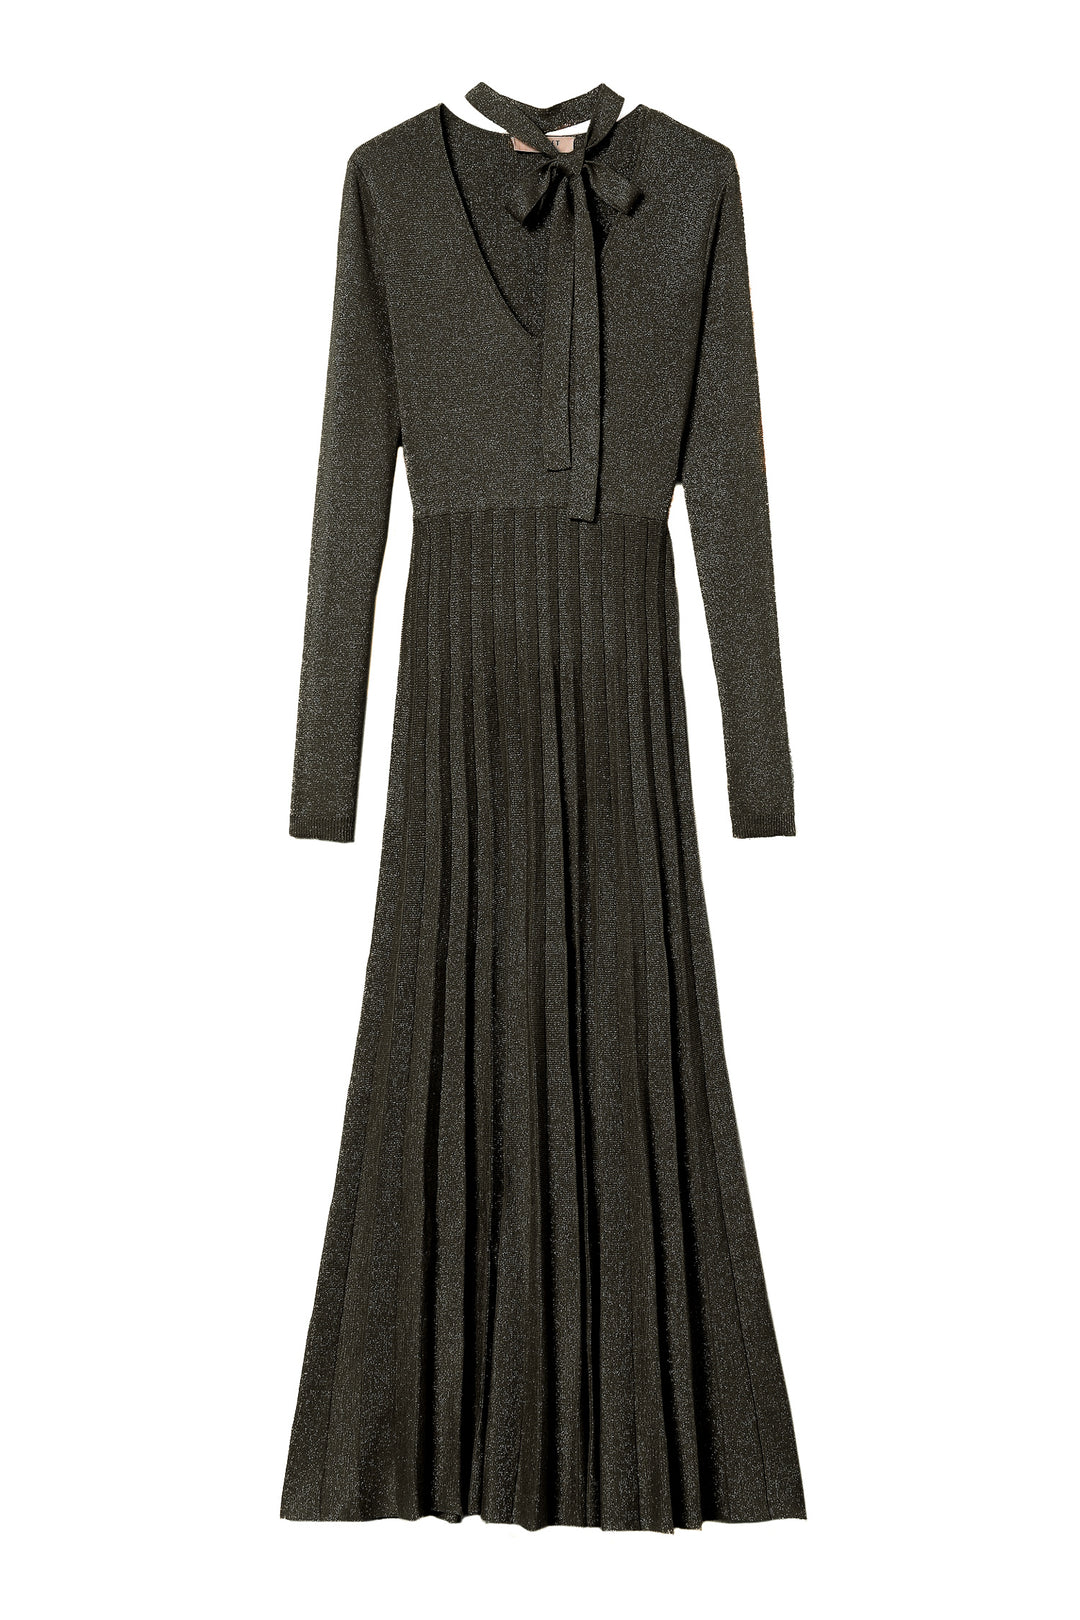 TWINSET Abito lungo nero in maglia plissé lurex - Mancinelli 1954